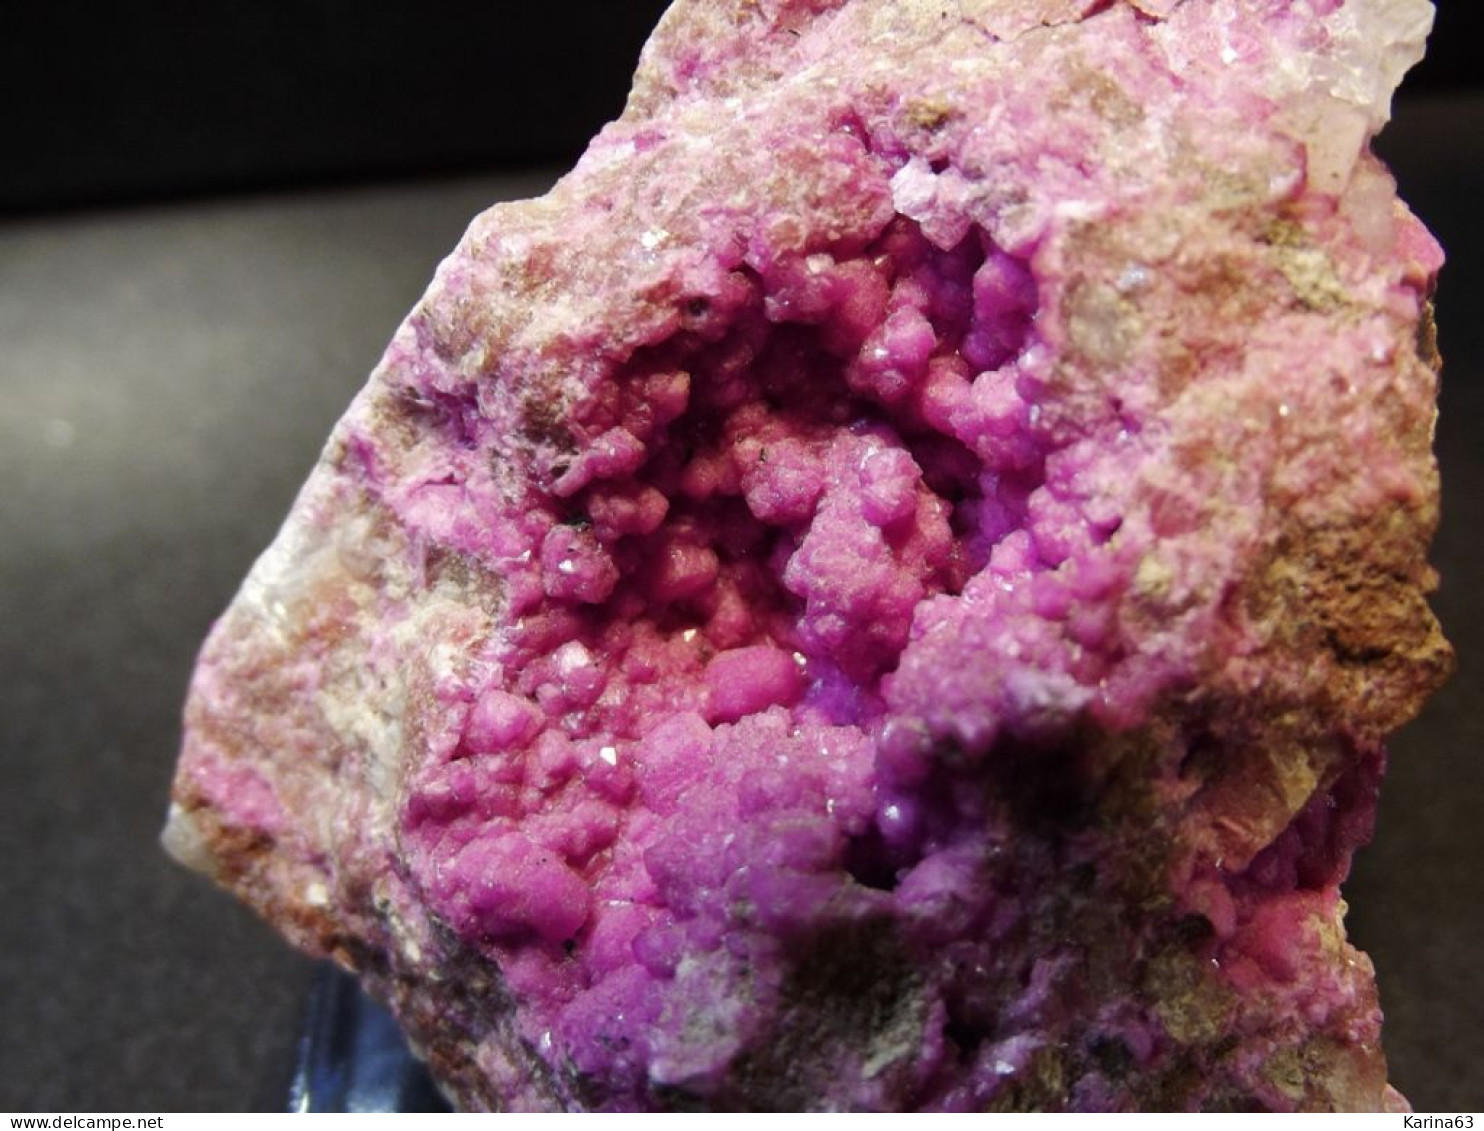 Cobalto Calcite ( 5 X 4.5 X 3.5 Cm ) Kakanda Mine - Kambove - Haut-Katanga - RDC - Minerals